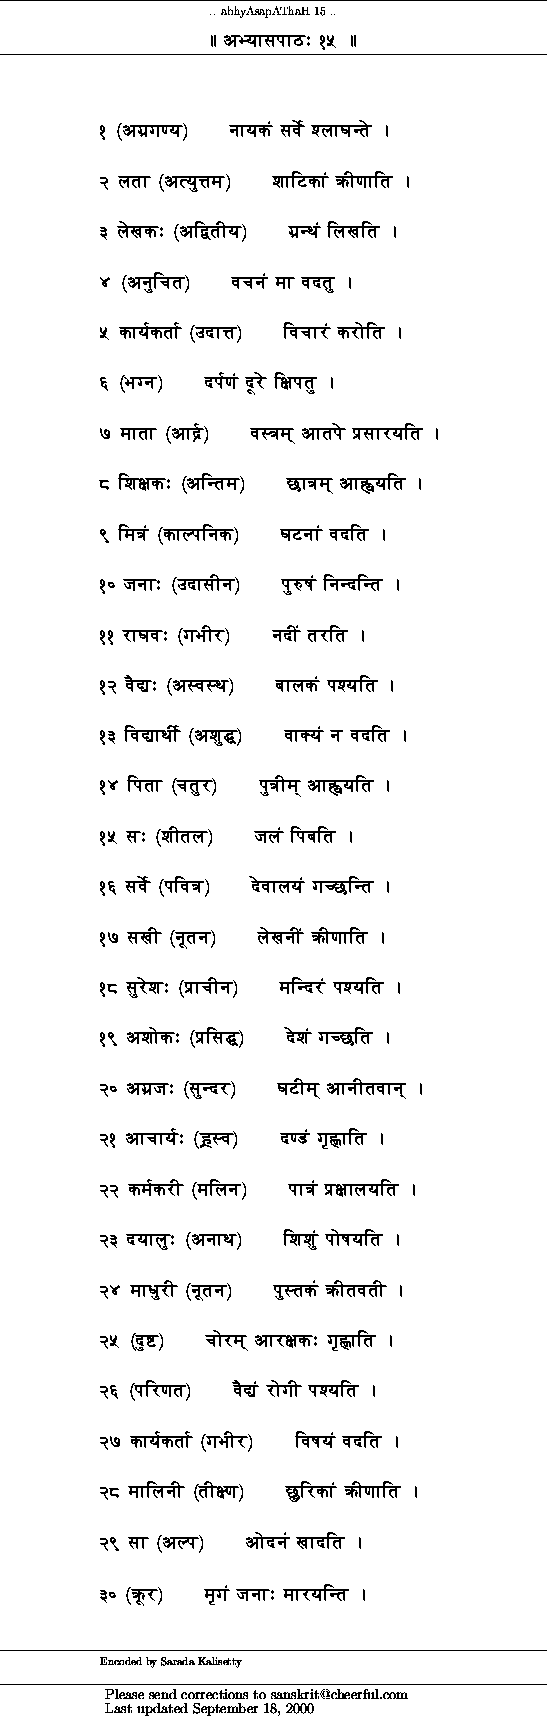 lalitha sahasranamam malayalam meaning